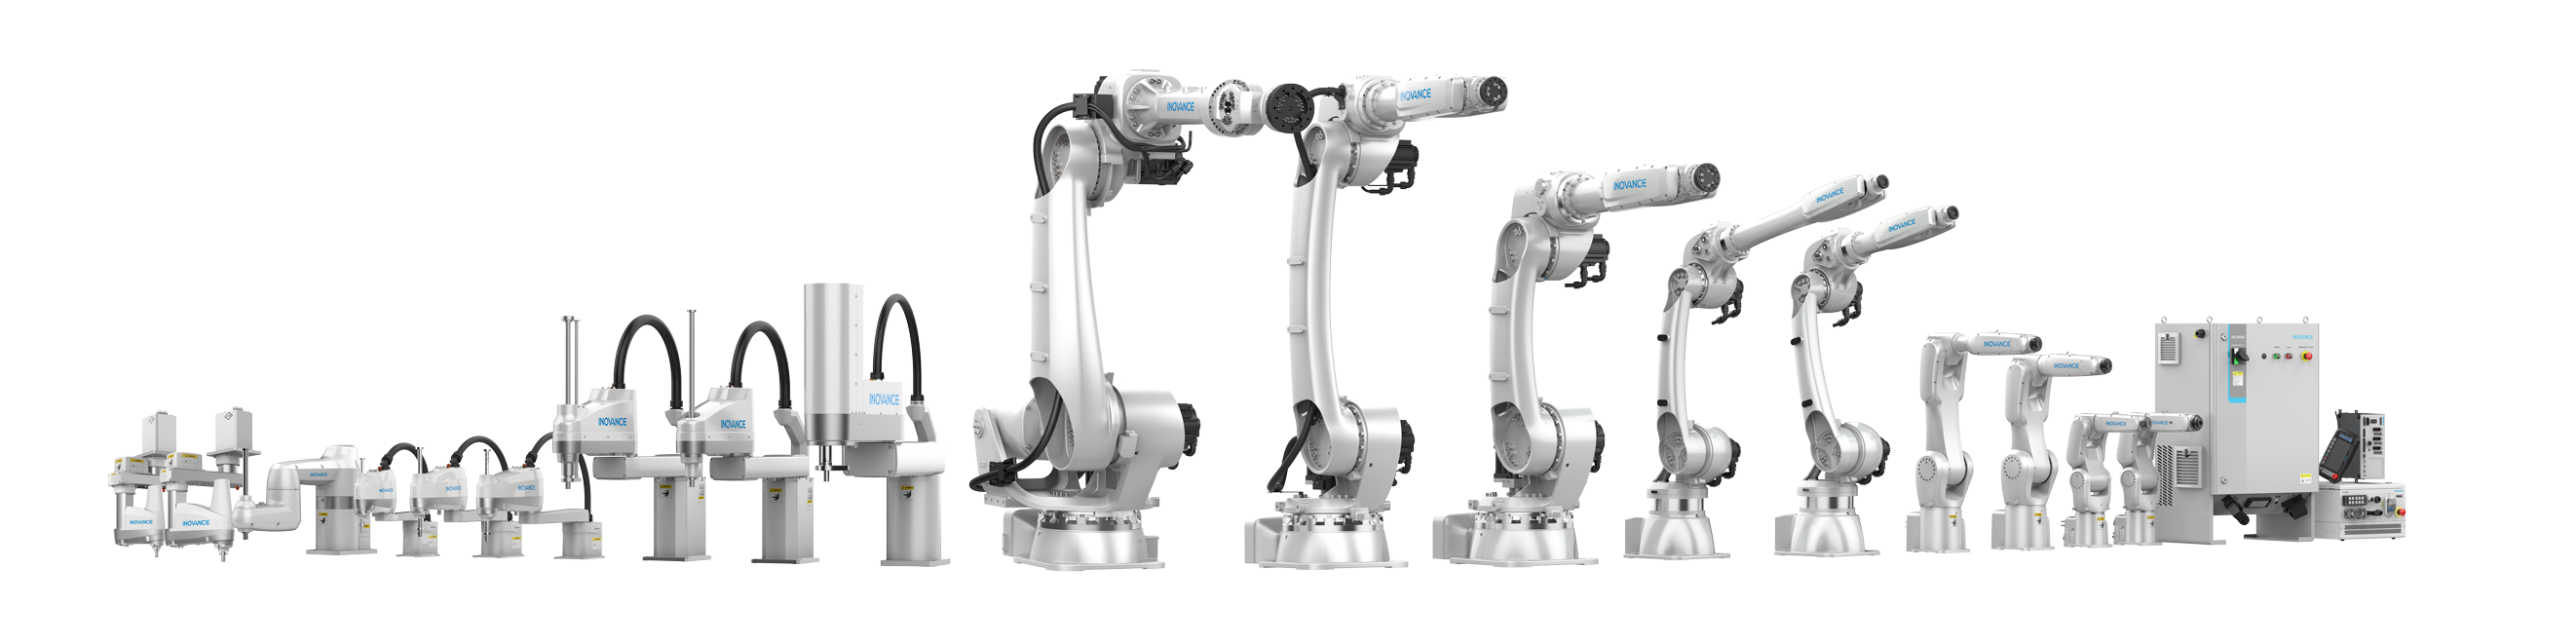 Промышленные роботы Inova